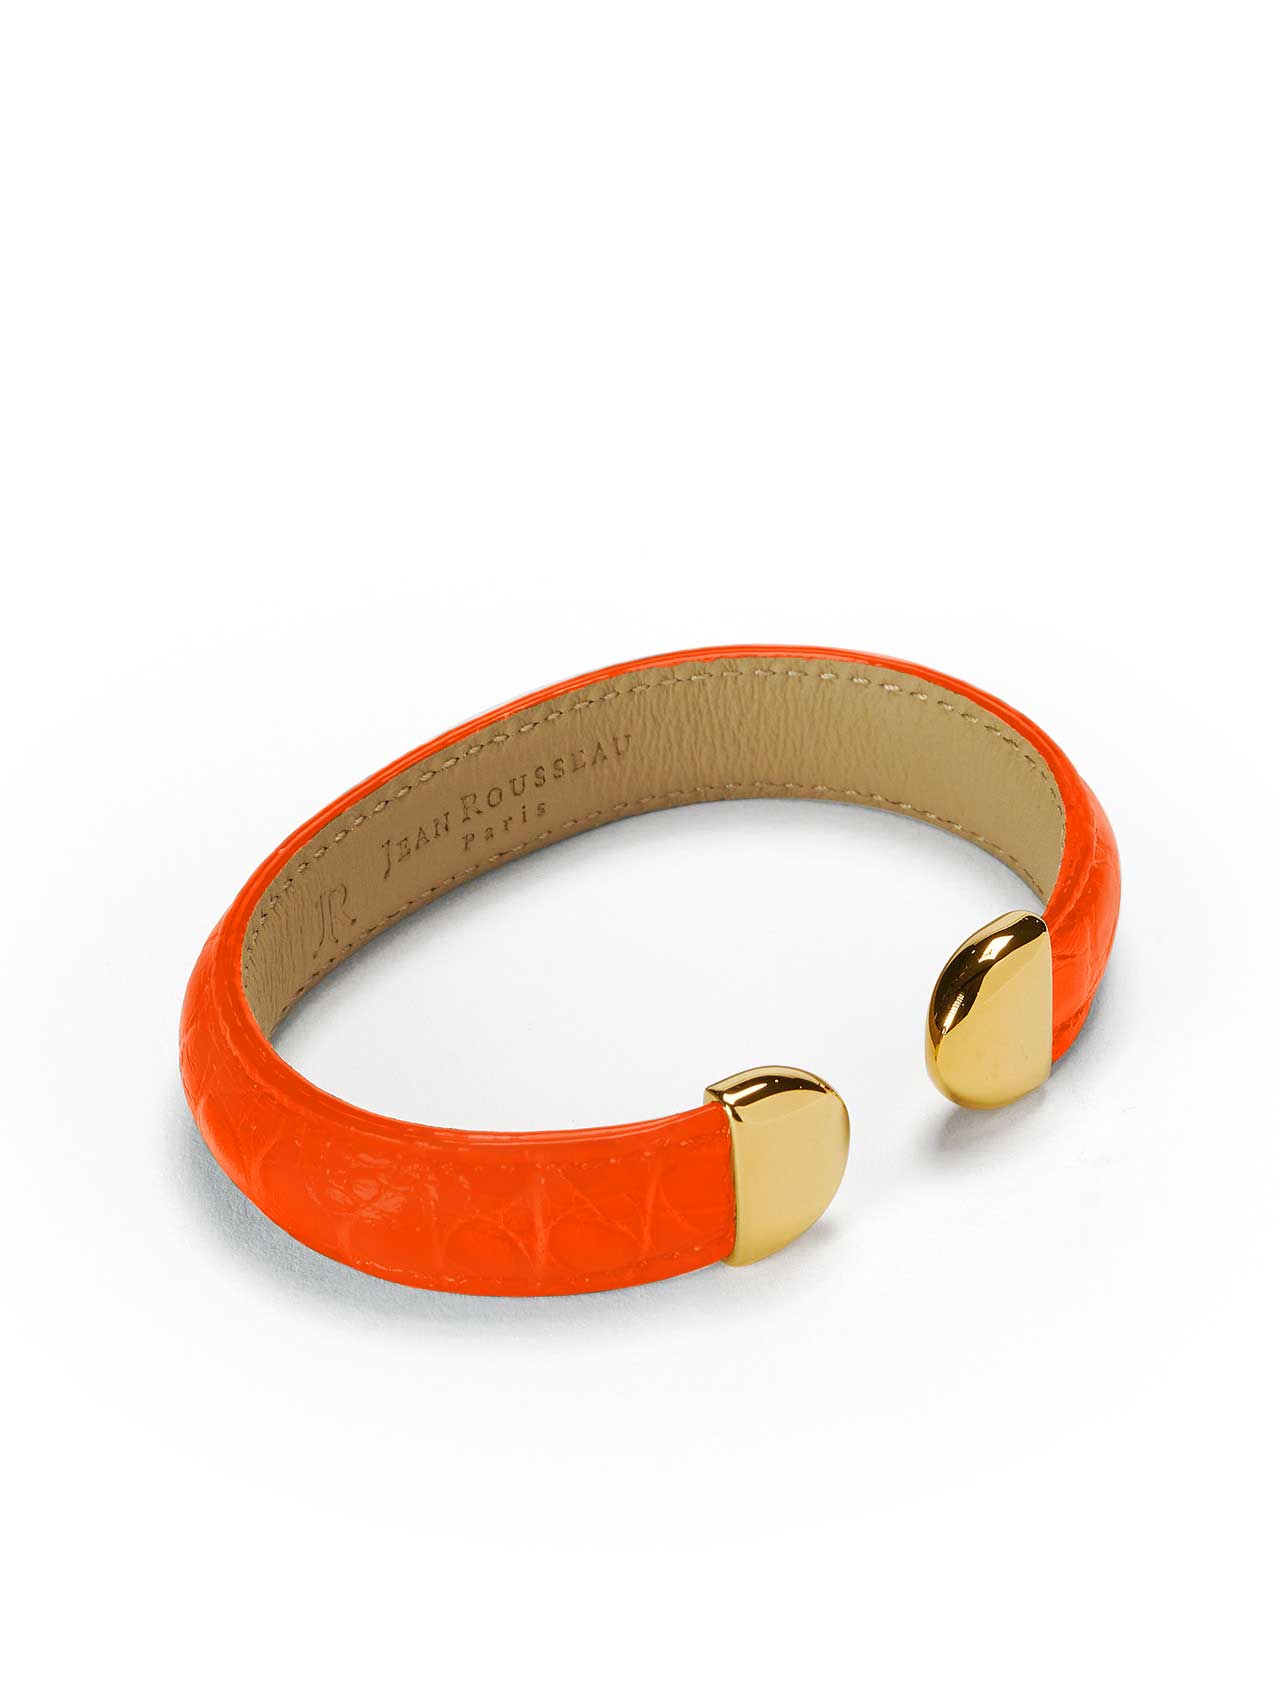 bracelet orange leather jean rousseau